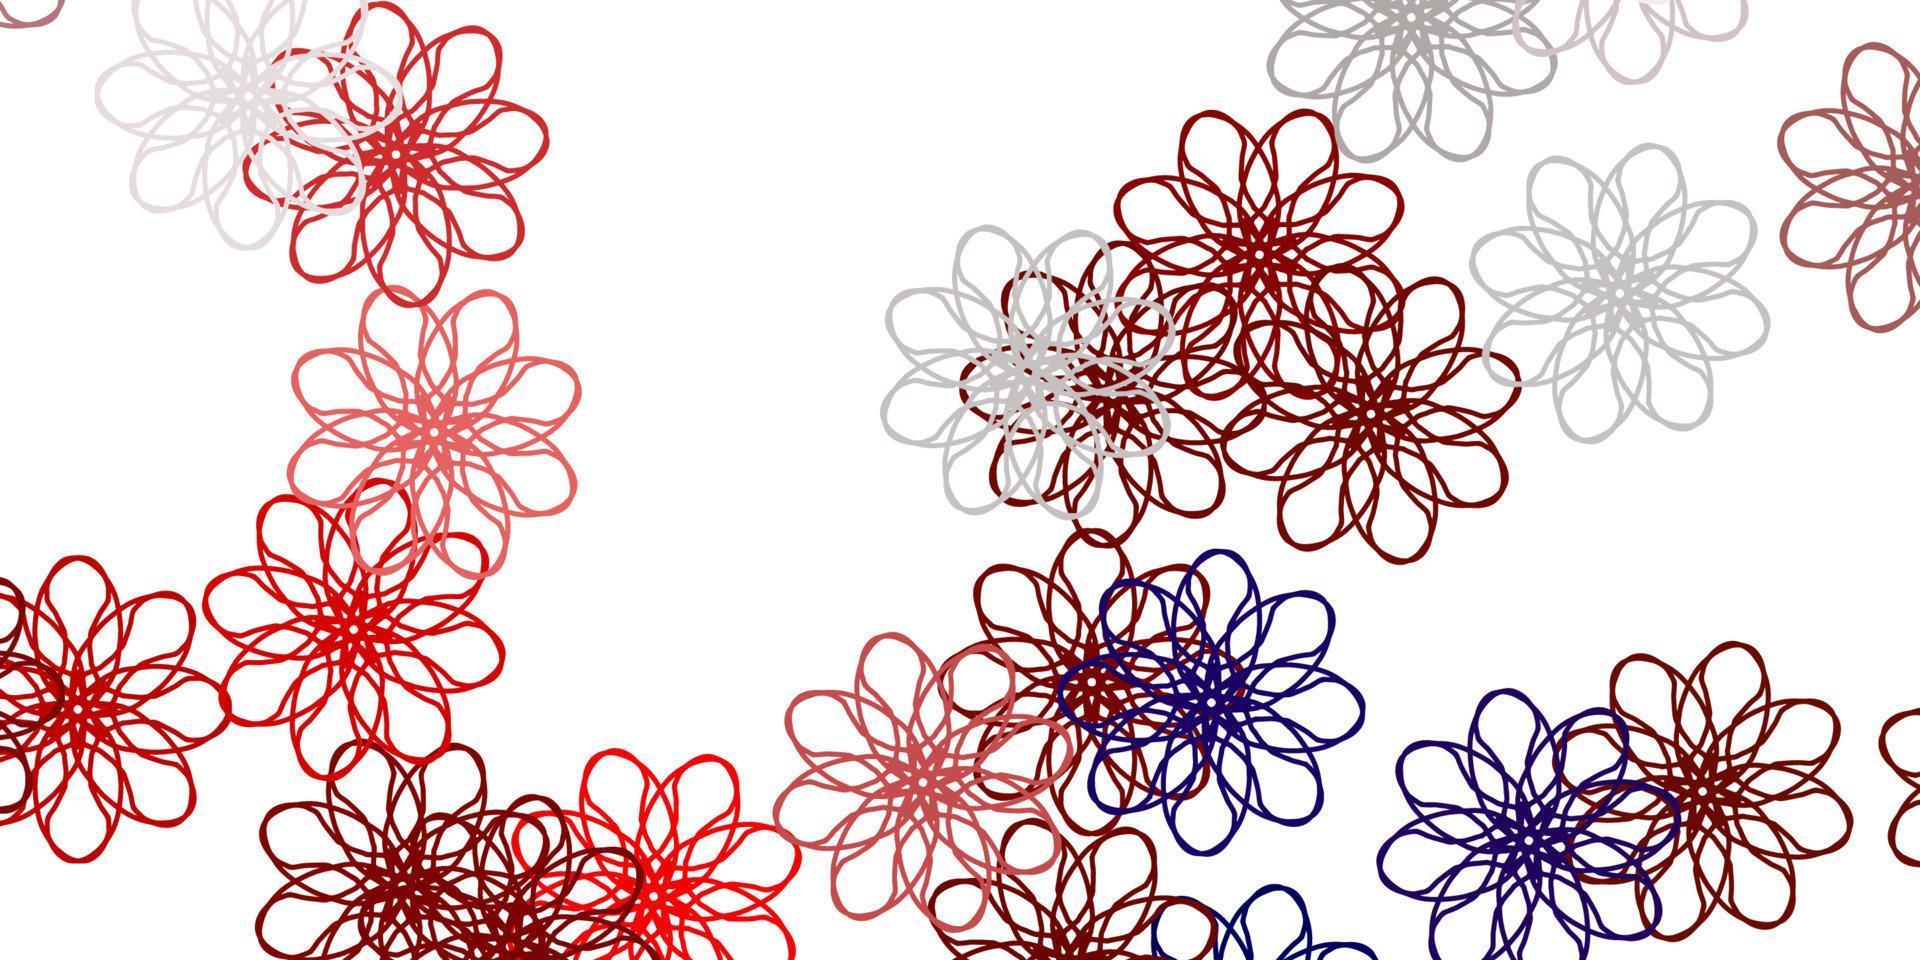 luz vermelha vector doodle padrão com flores.